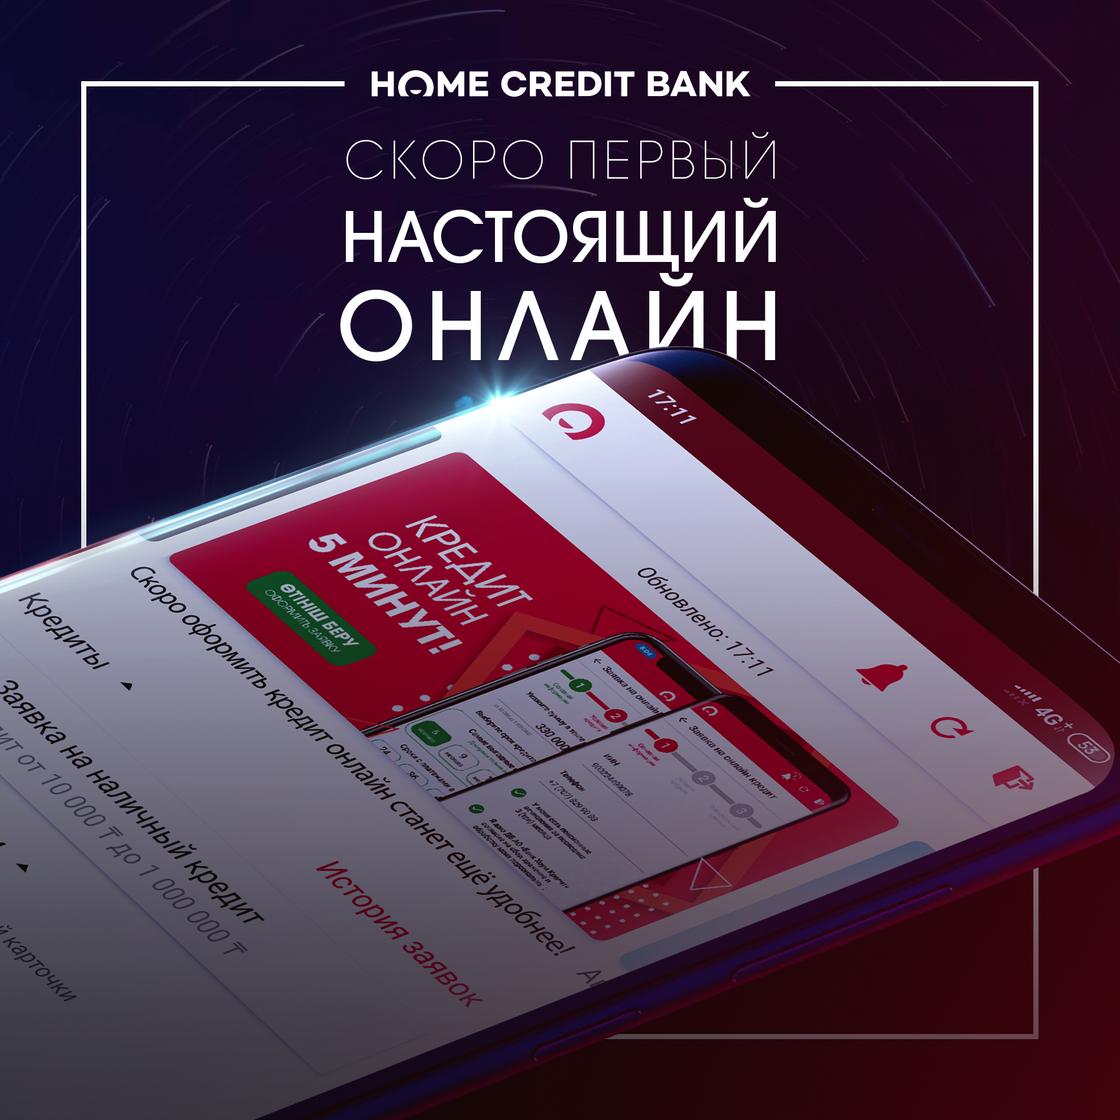 Казахстанцы смогут оформить и получить банковский кредит прямо в приложении без посещения отделений